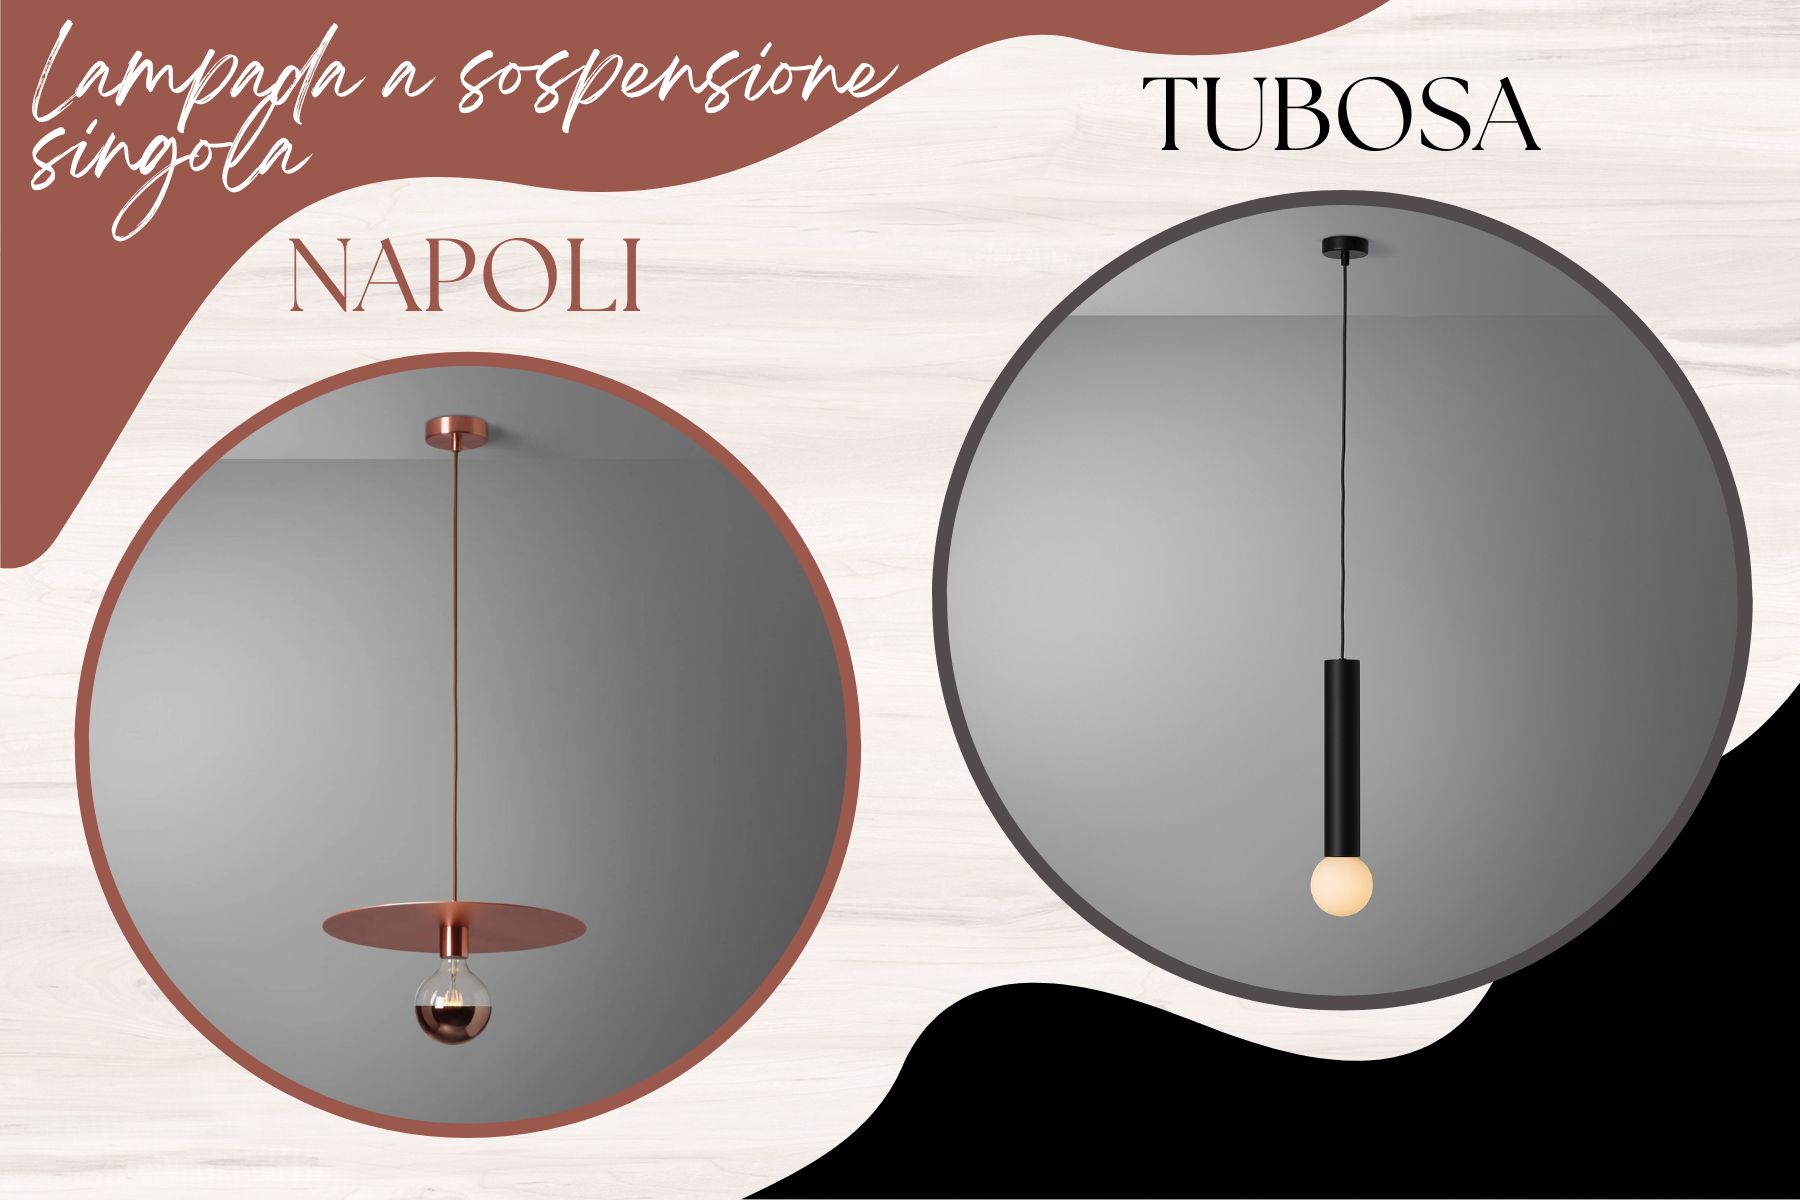 Al momento stai visualizzando Lampada a sospensione singola: Napoli o Tubosa